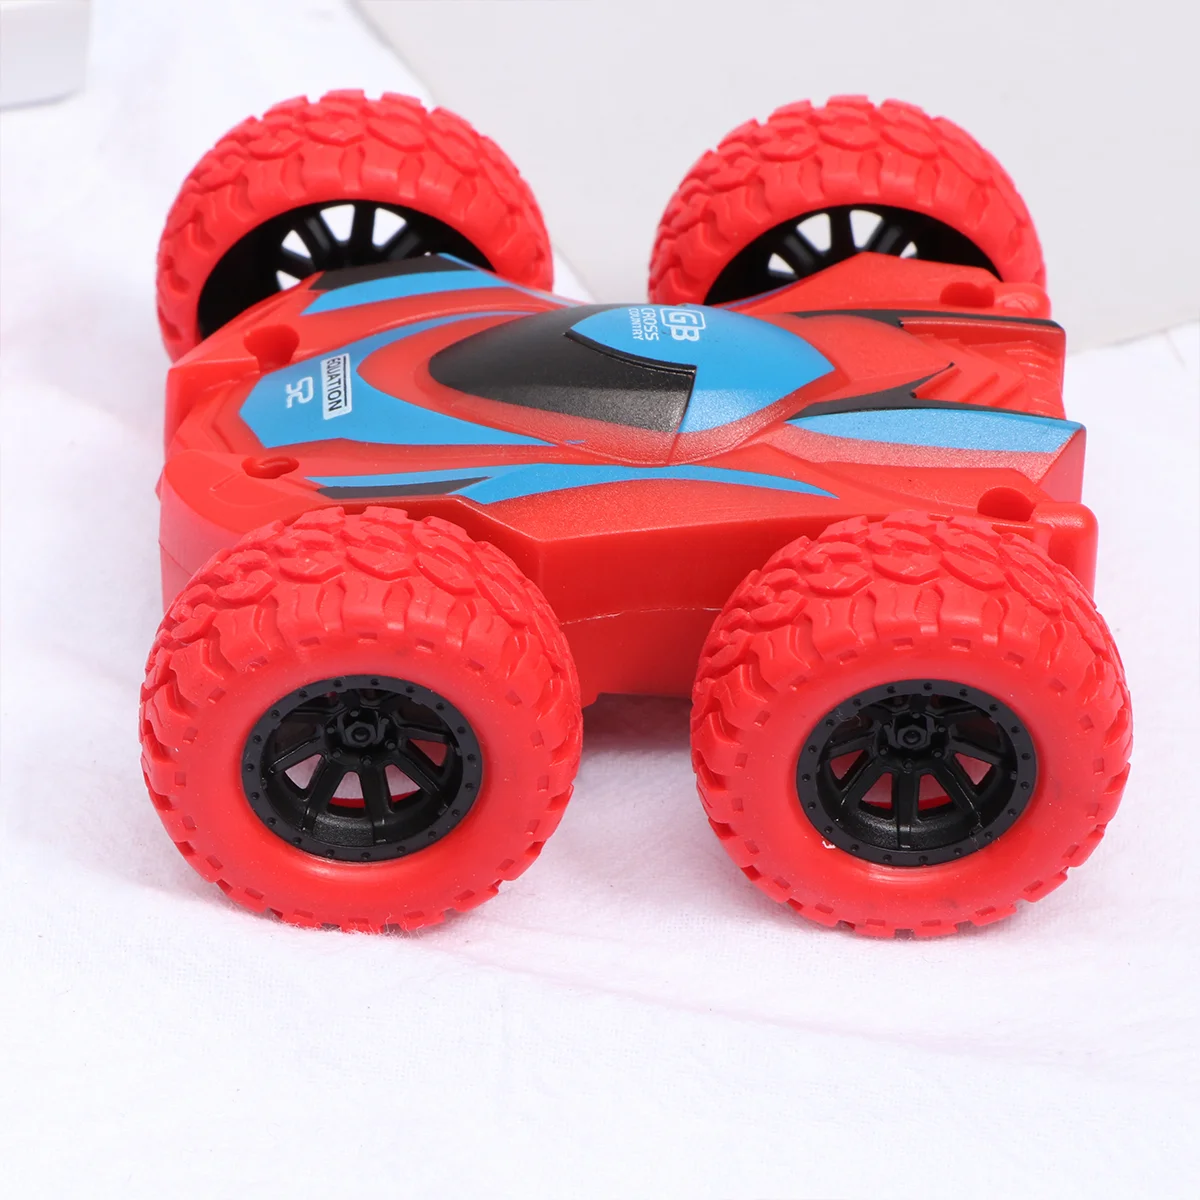 

3 шт. двухсторонняя инерционная детская модель автомобиля для торможения детей (красная)